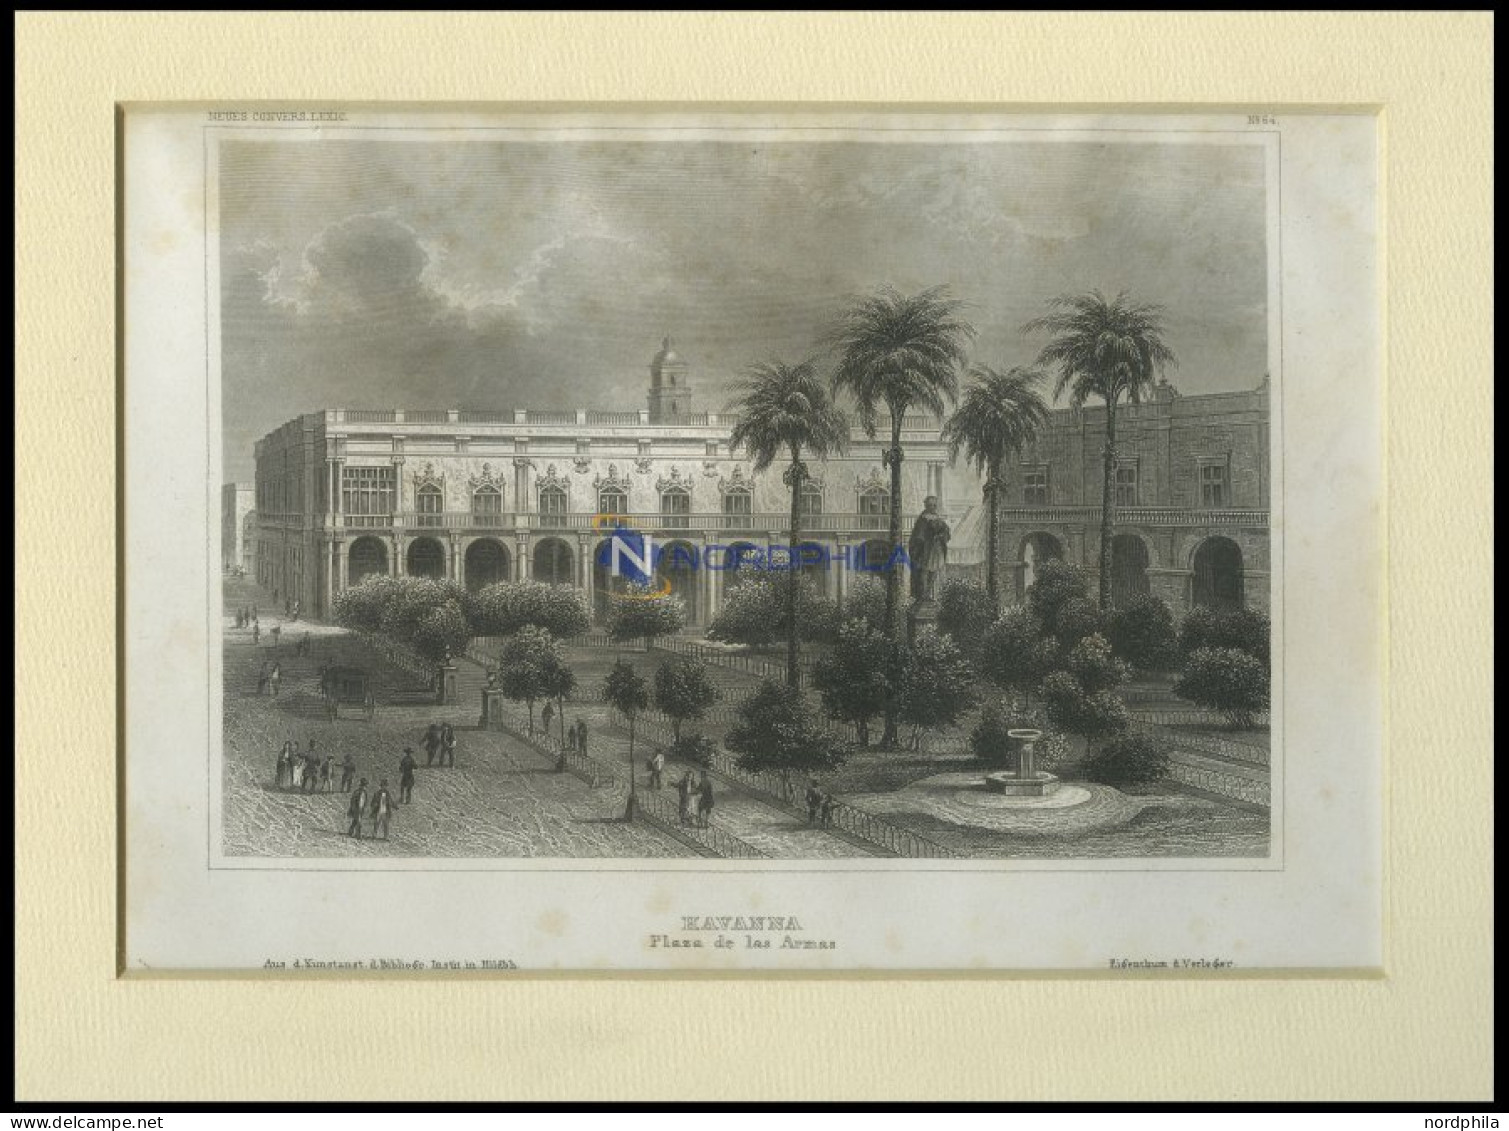 KUBA: Havanna, Plaza De Las Armas, Stahlstich Von B.I. Um 1840 - Lithografieën